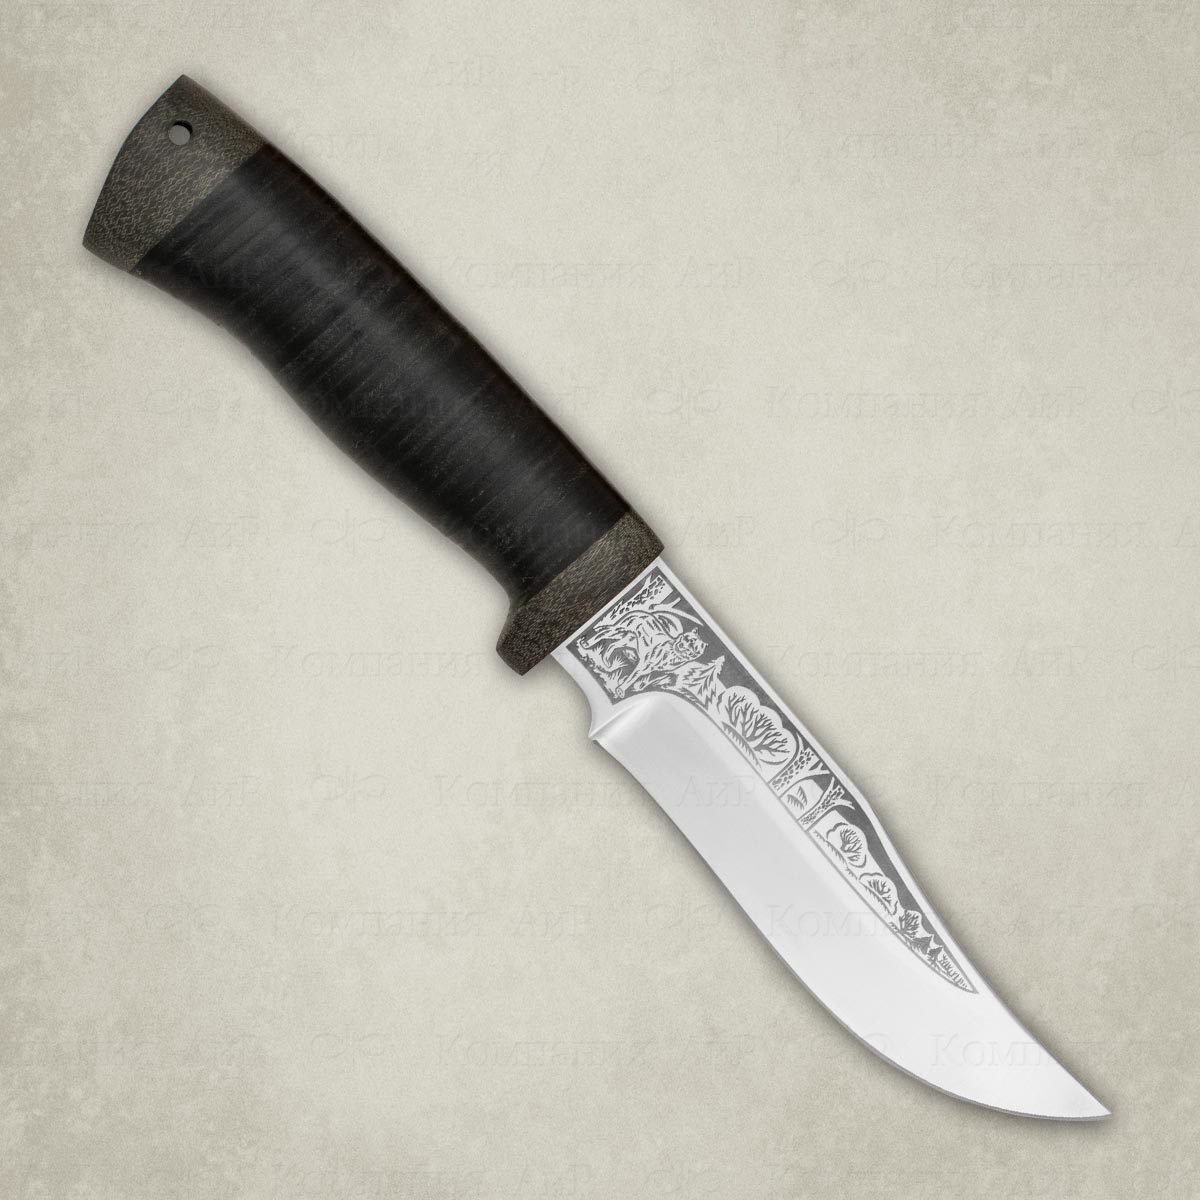 Нож АиР Клычок-1 сталь М390 рукоять кожа.